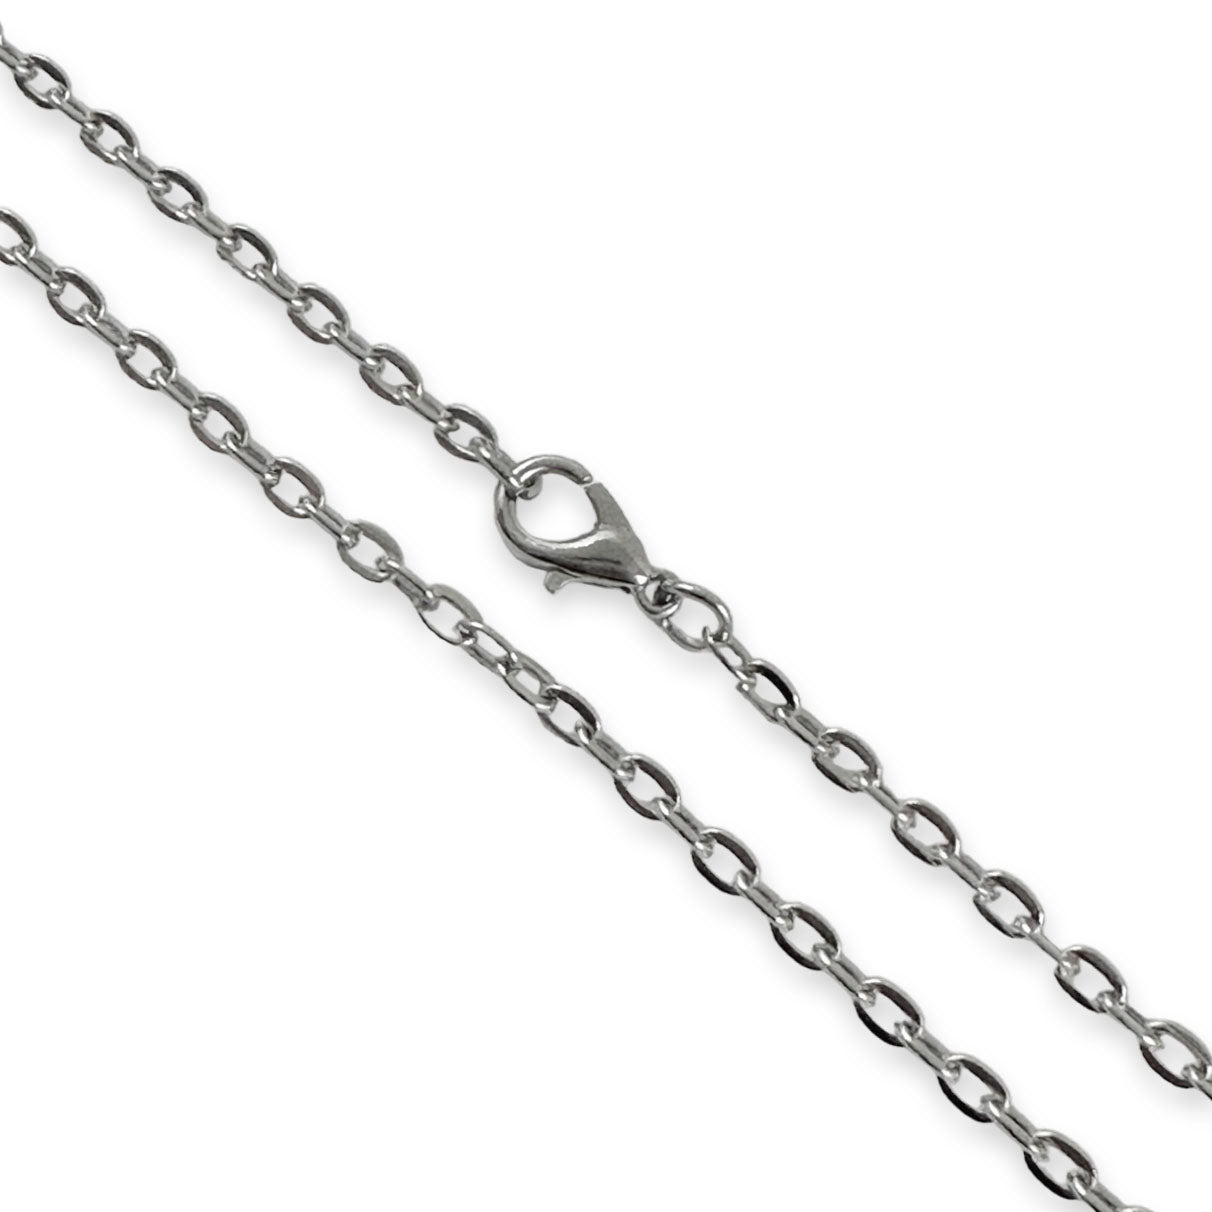 Bulk Antique Silver Link Chain Necklaces 24" - Select Quantity